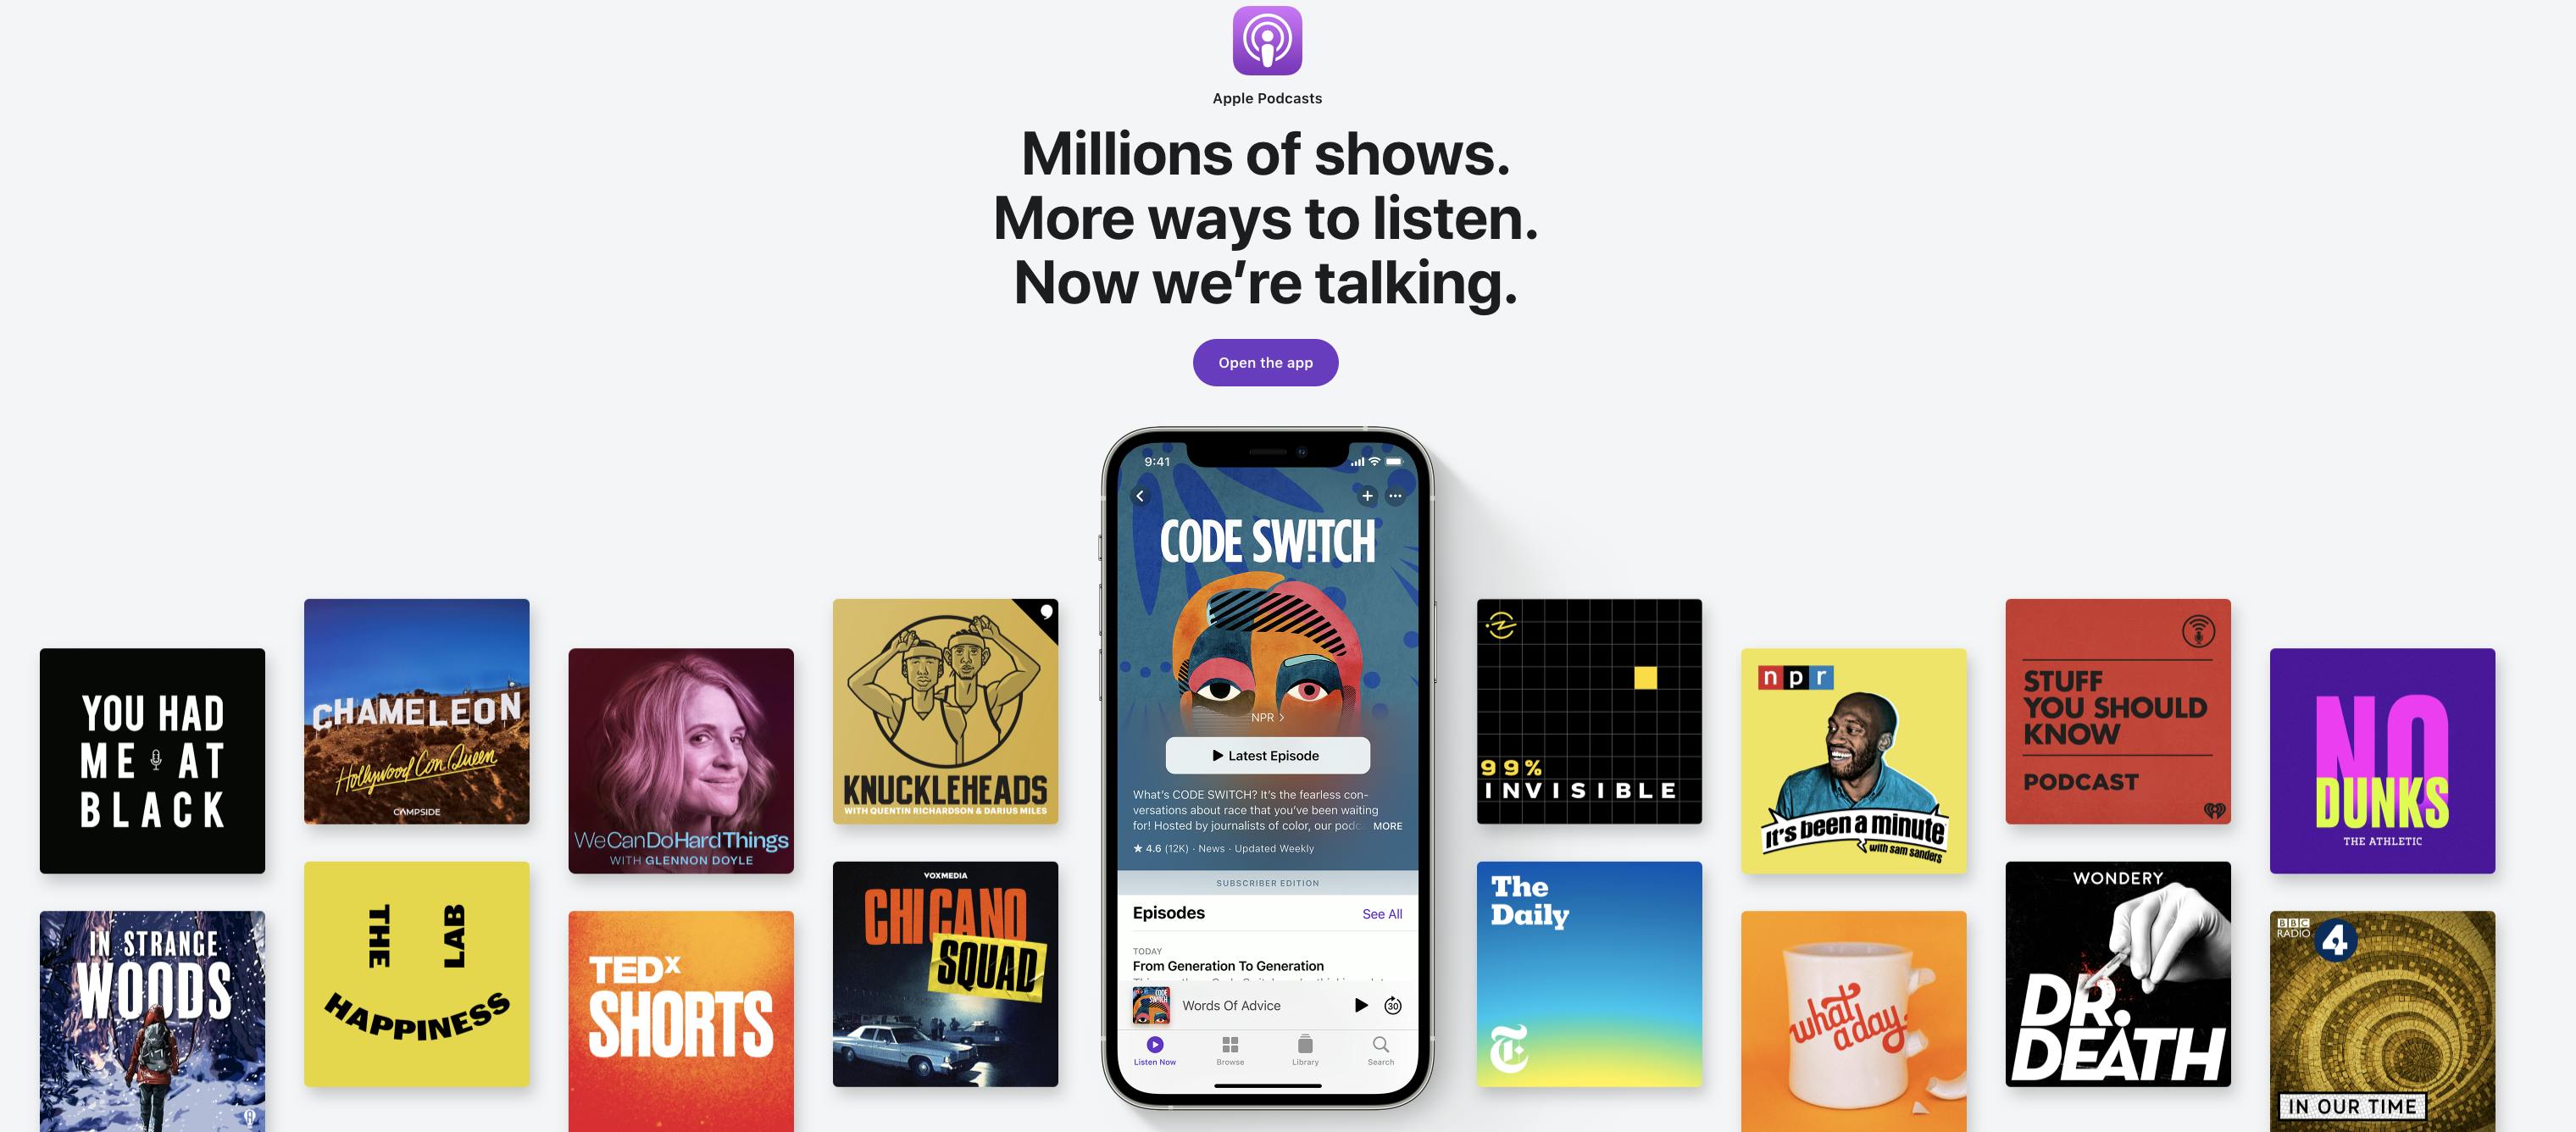 Spotify — Podcasts